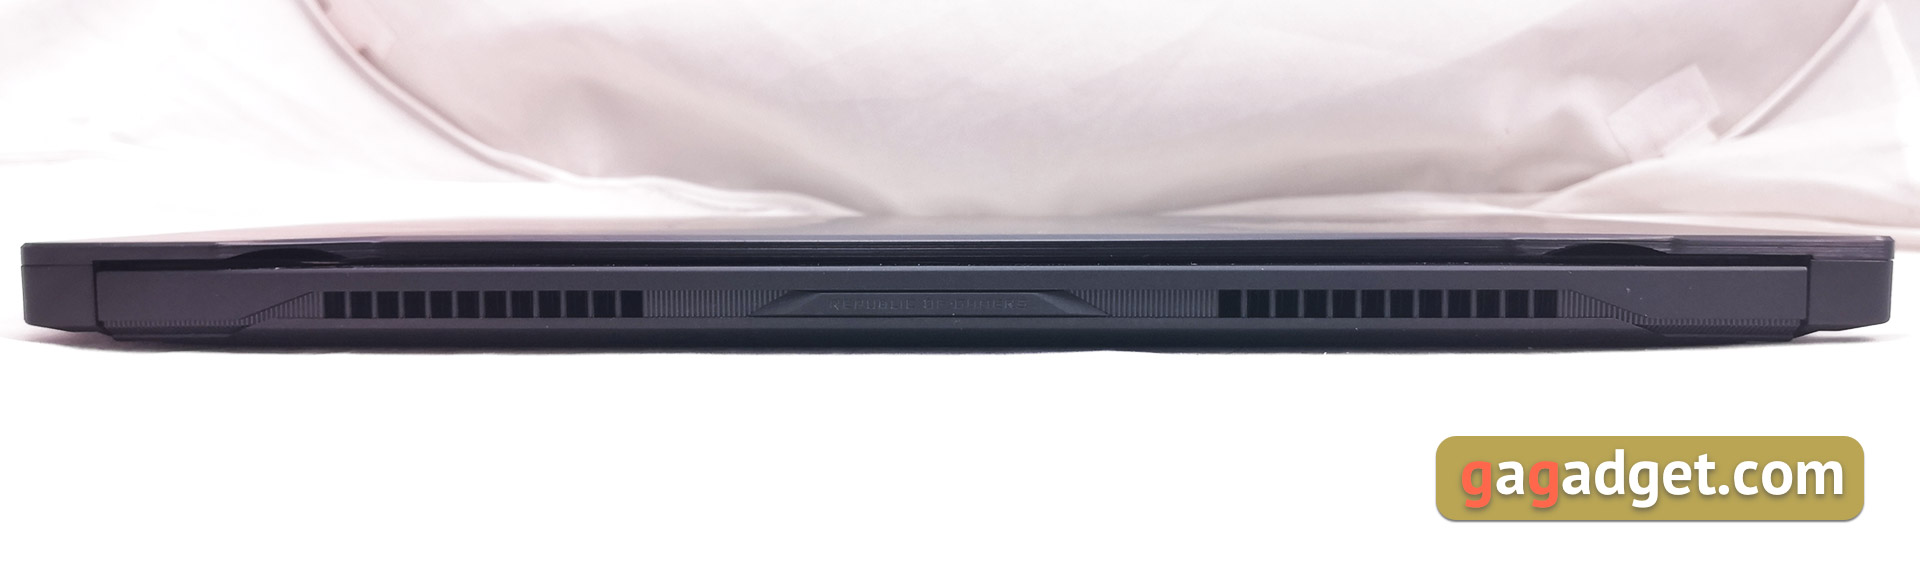 Recenzja ASUS ROG Zephyrus S GX502GW: wydajny laptop do gier z GeForce RTX 2070 o wadze zaledwie 2 kg-7